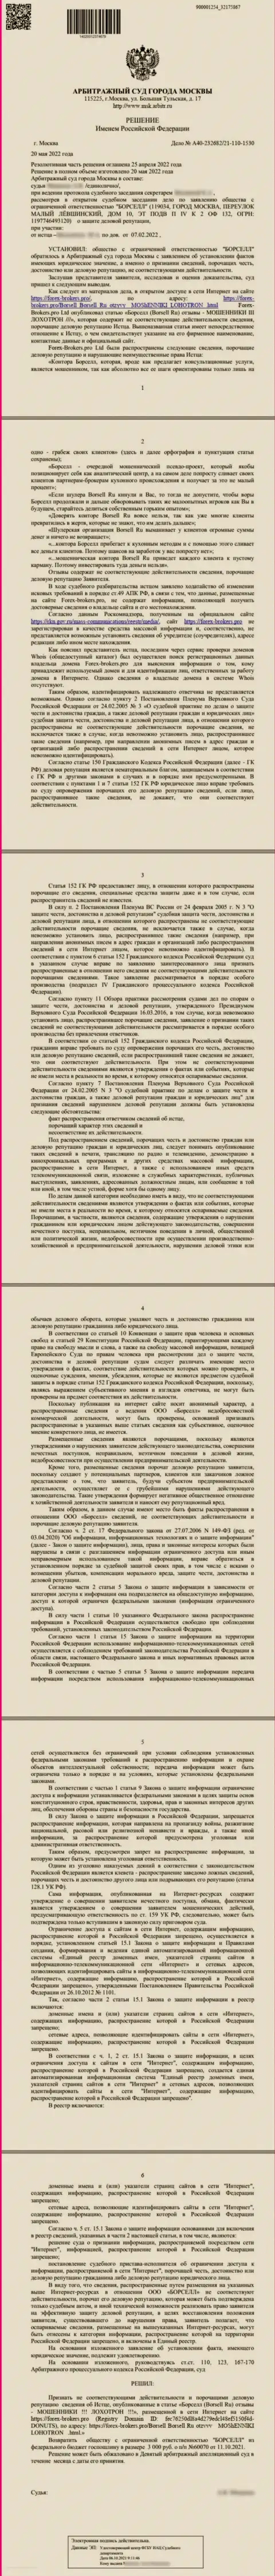 Скриншот решения суда по исковому заявлению конторы Borsell Ru